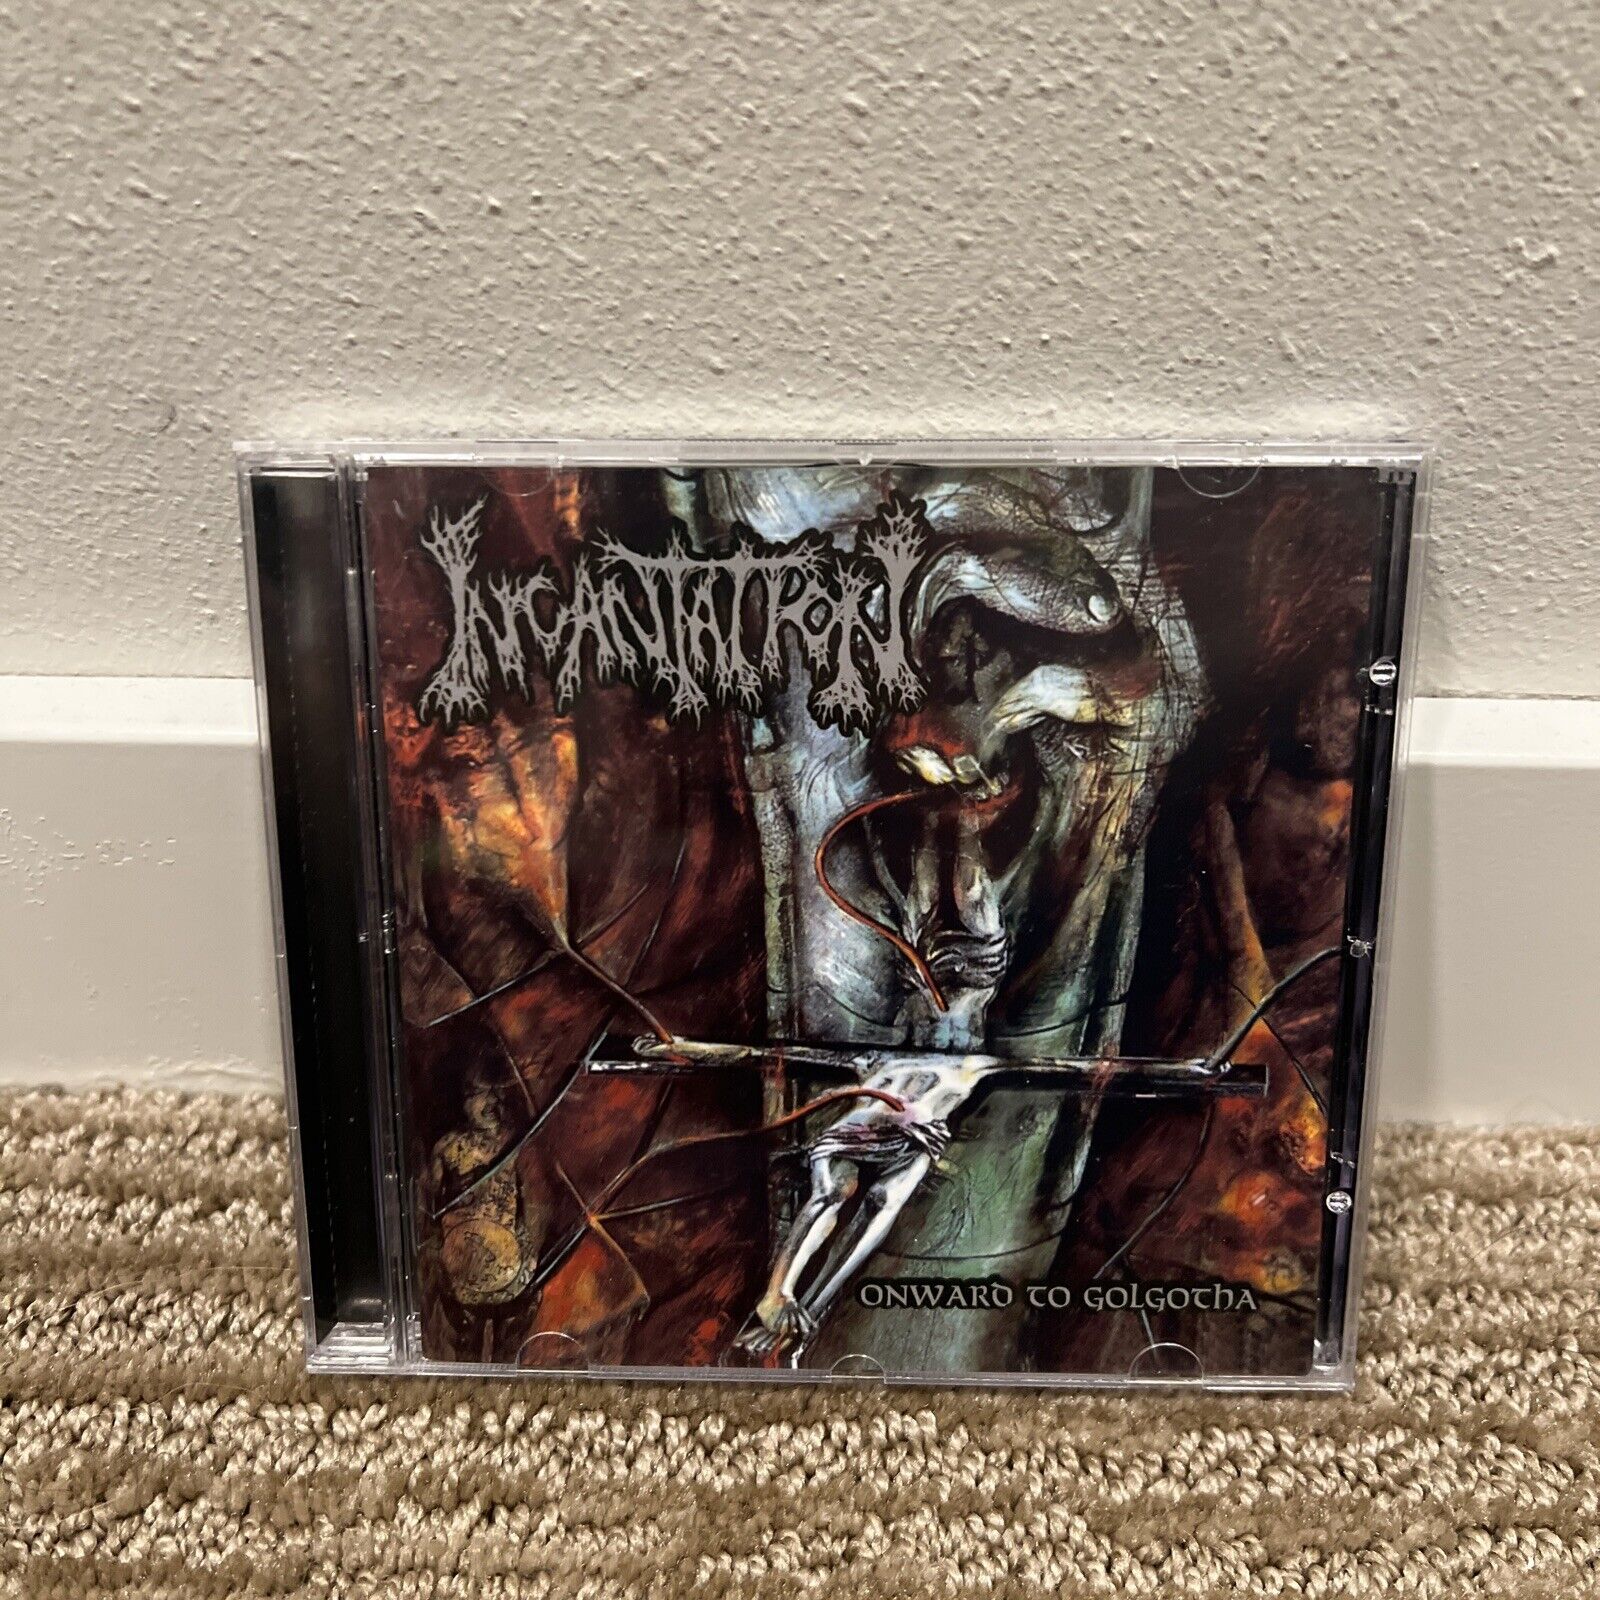 Onward to Golgotha by Incantation (CD, 2012) Death Metal